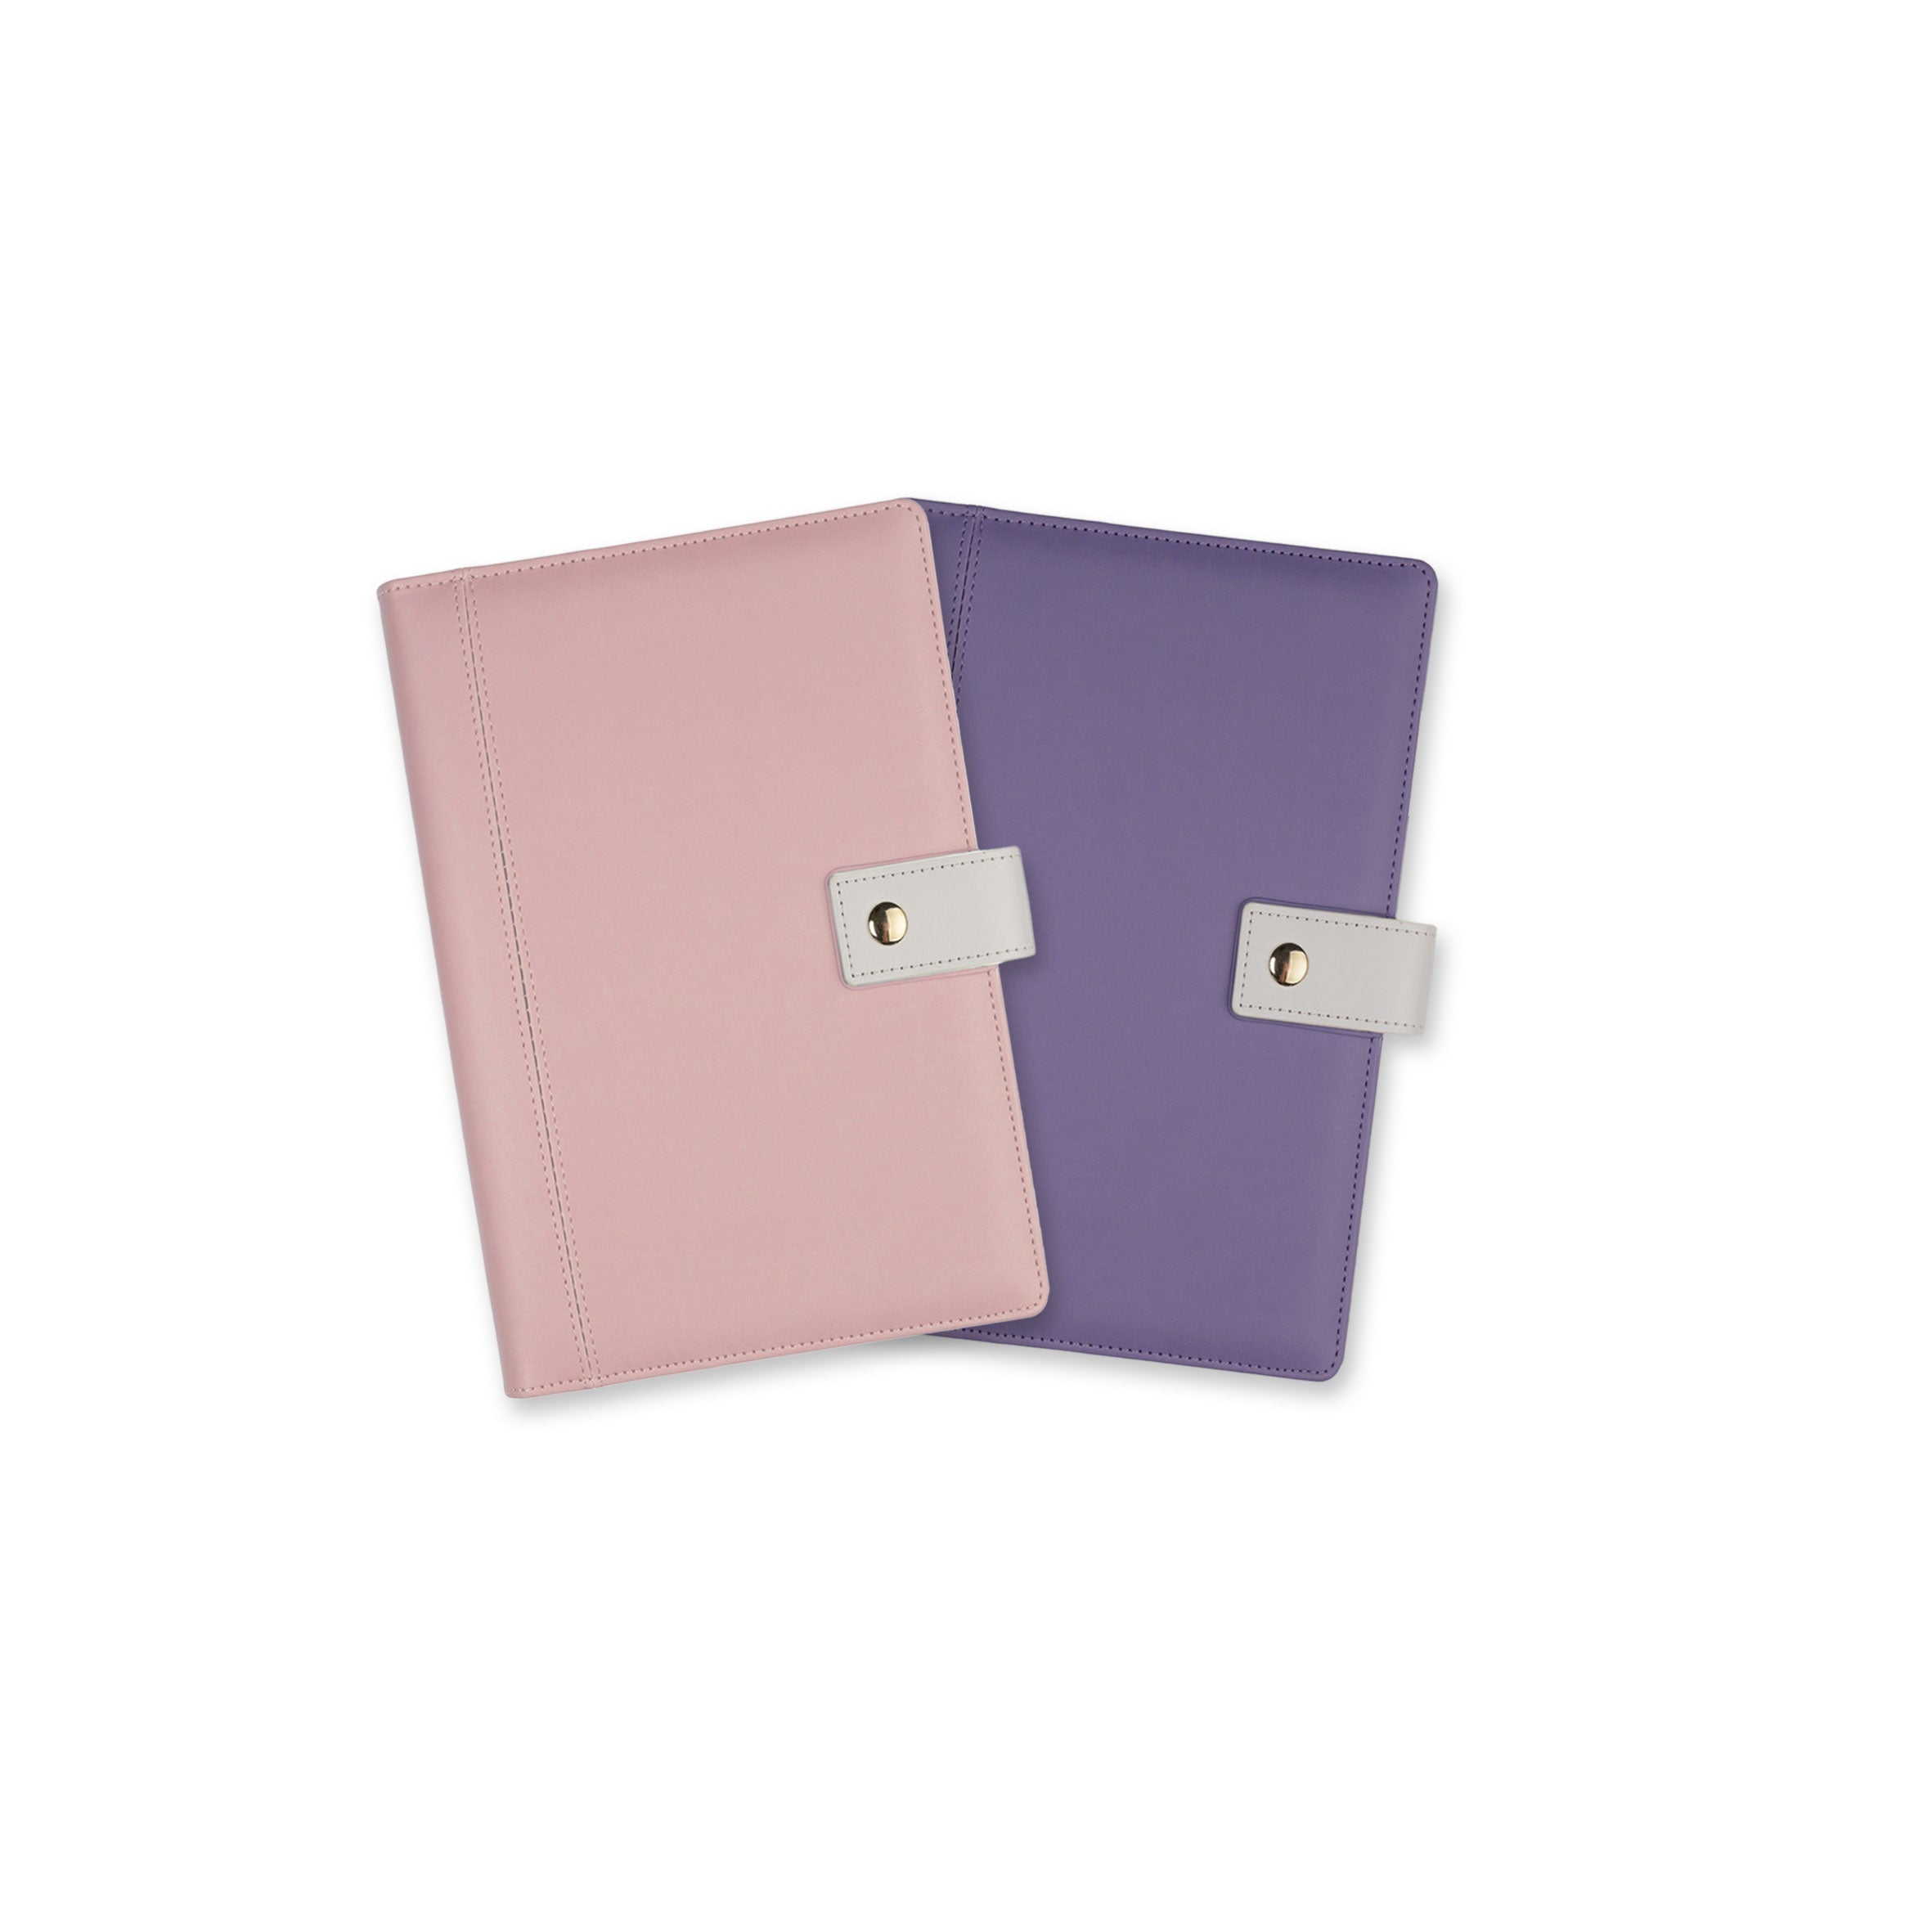 Agendă piele ecologică A6 (mică) Lilac Purple Quartz Office